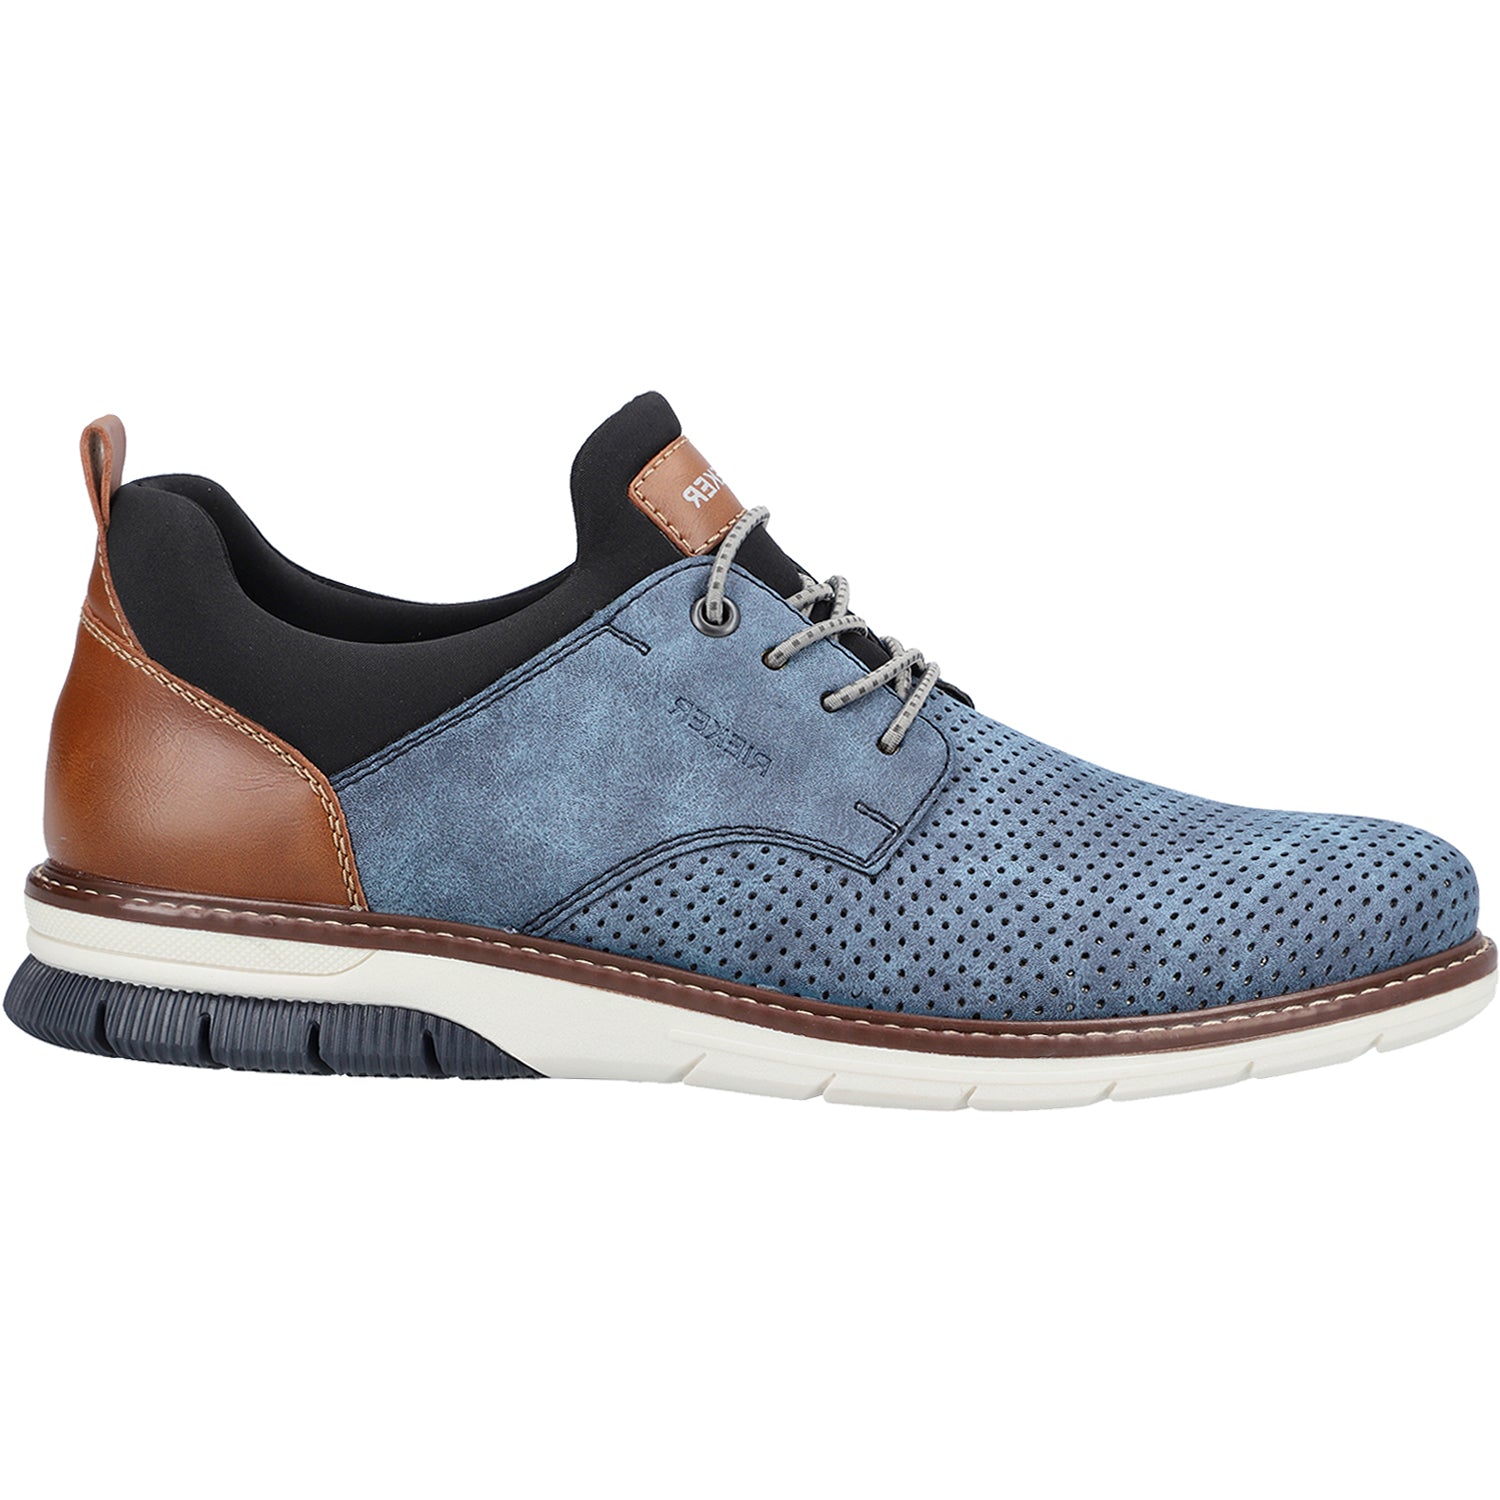 Rieker 14450-14 | Men's Oxford Shoes | Footwear etc.